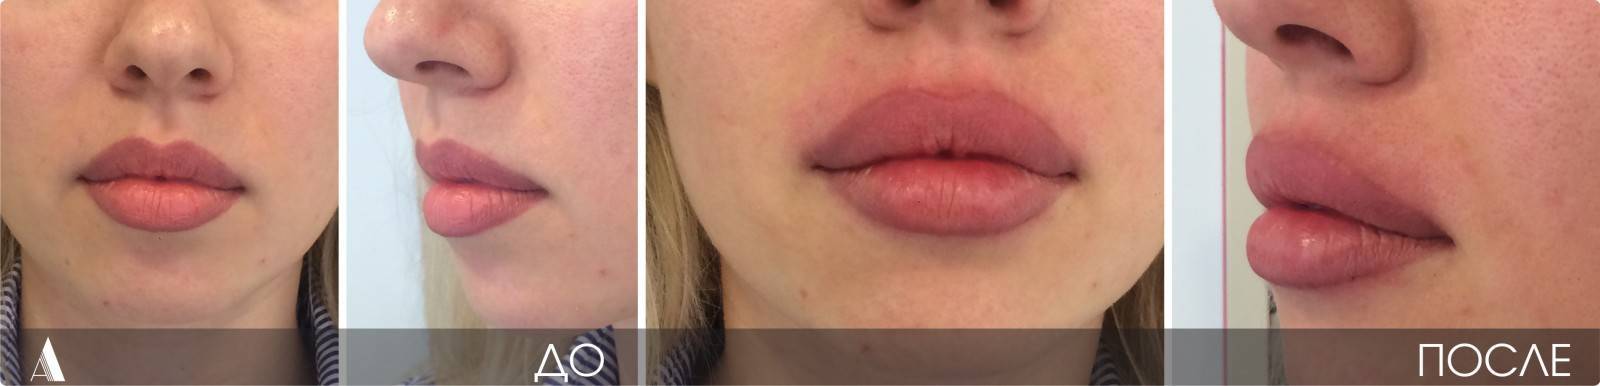 5 эффективных методов, как поднять опущенные вниз уголки рта и разгладить морщины